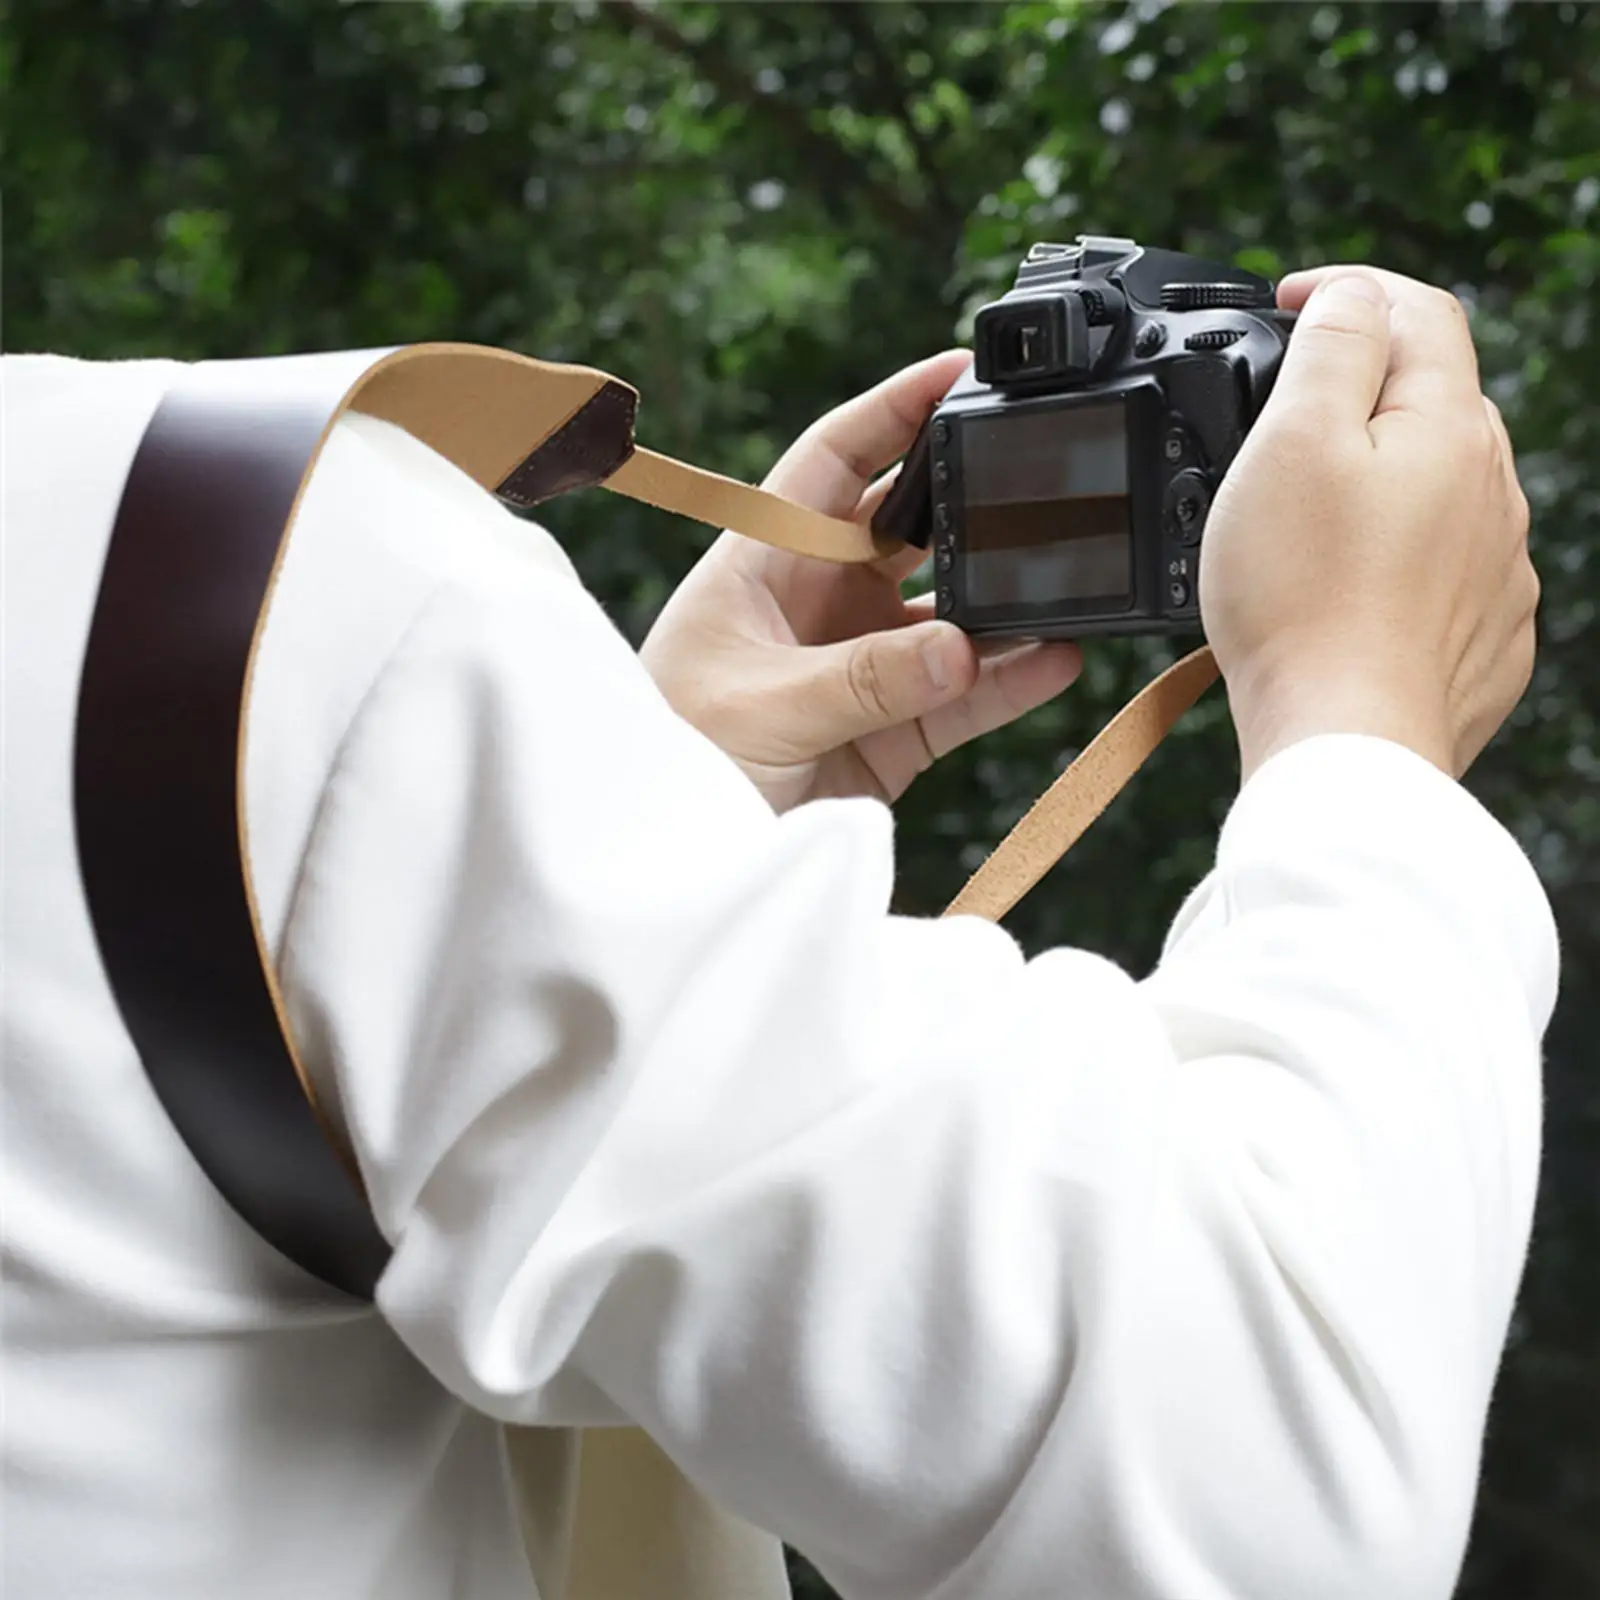 Universal Camera Neck Shoulder Strap Belt Vintage Anti Slip Comfortable Lens Strap Convenient for Slr DSLR Digital Camera